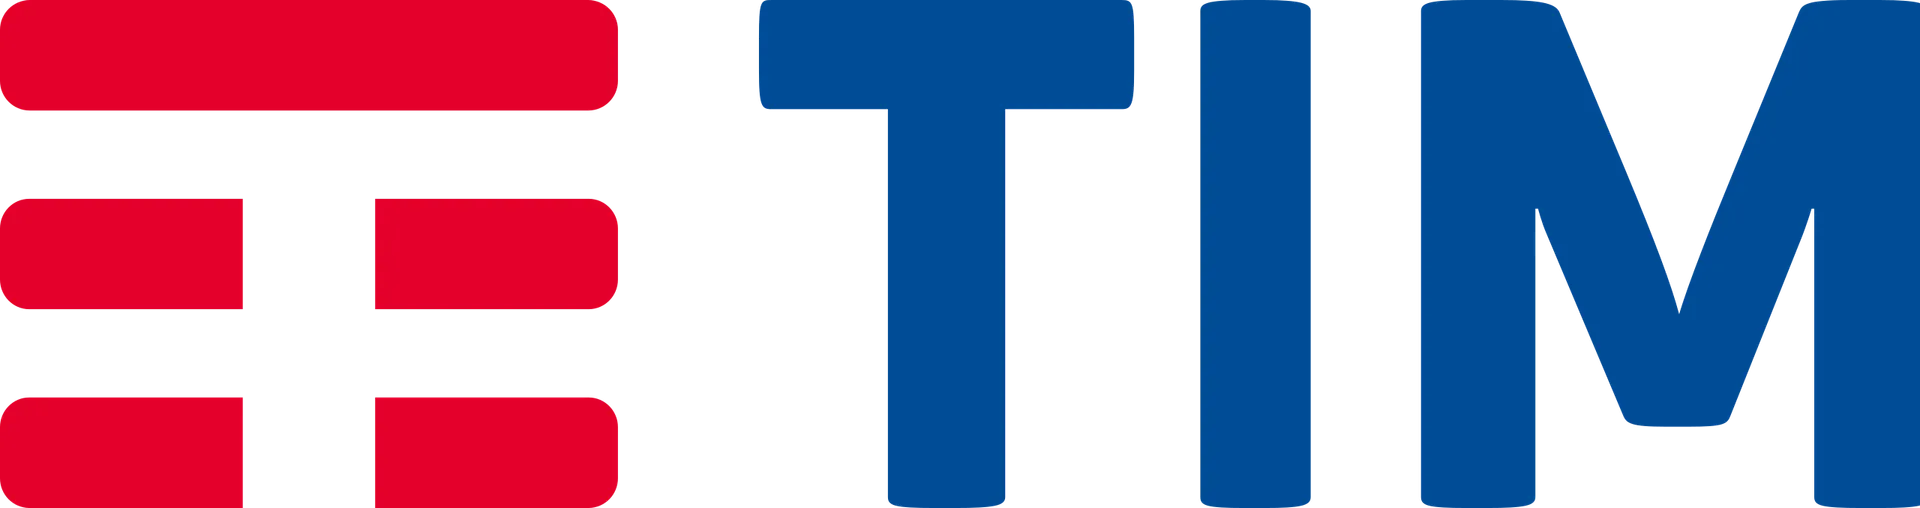 TIM logo de catálogo